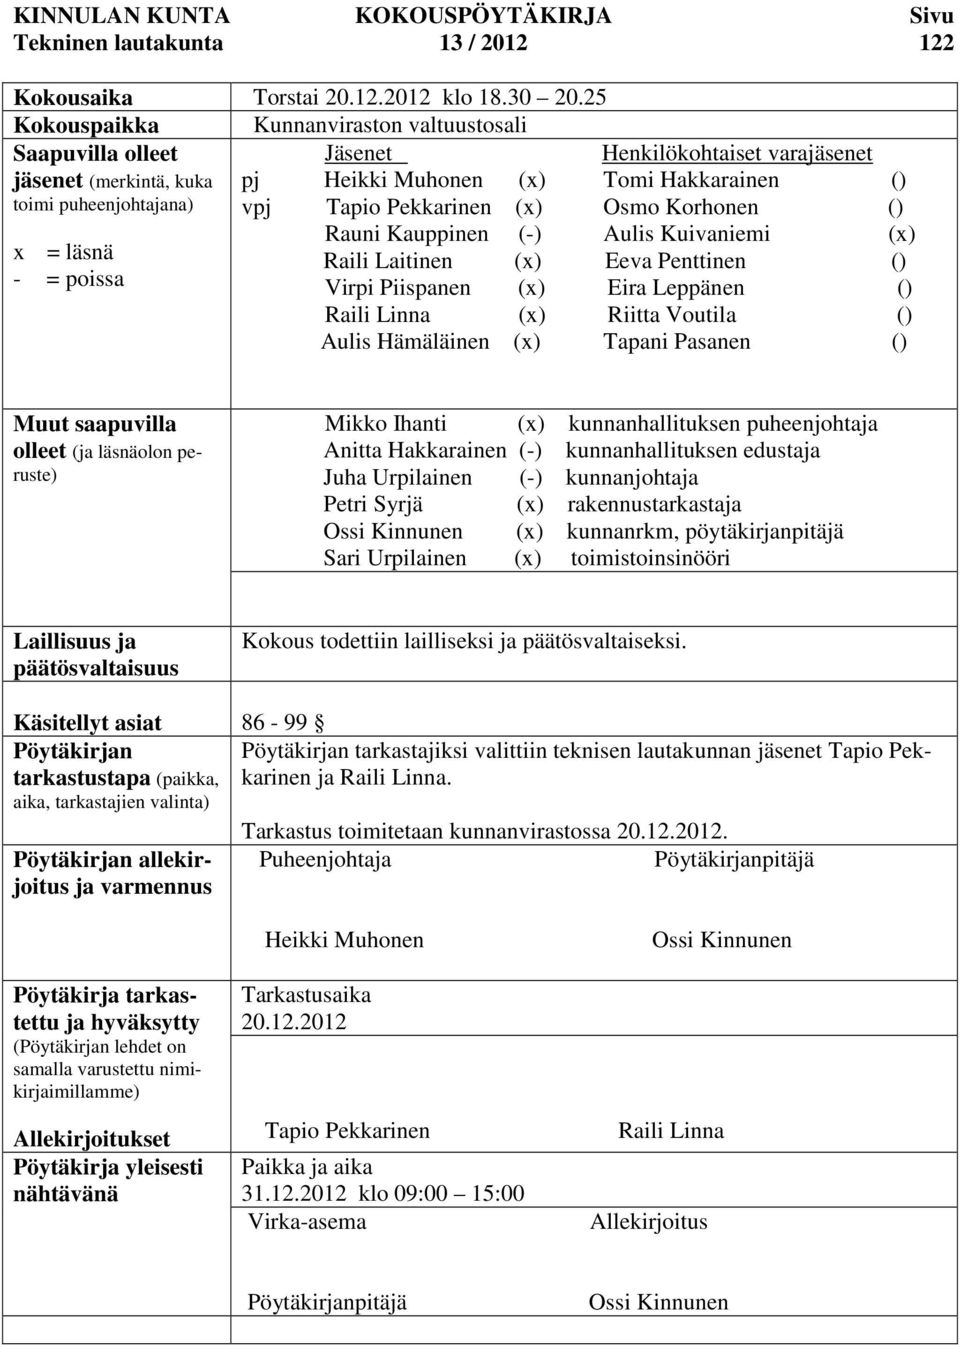 Hakkarainen () vpj Tapio Pekkarinen (x) Osmo Korhonen () Rauni Kauppinen (-) Aulis Kuivaniemi (x) Raili Laitinen (x) Eeva Penttinen () Virpi Piispanen (x) Eira Leppänen () Raili Linna (x) Riitta